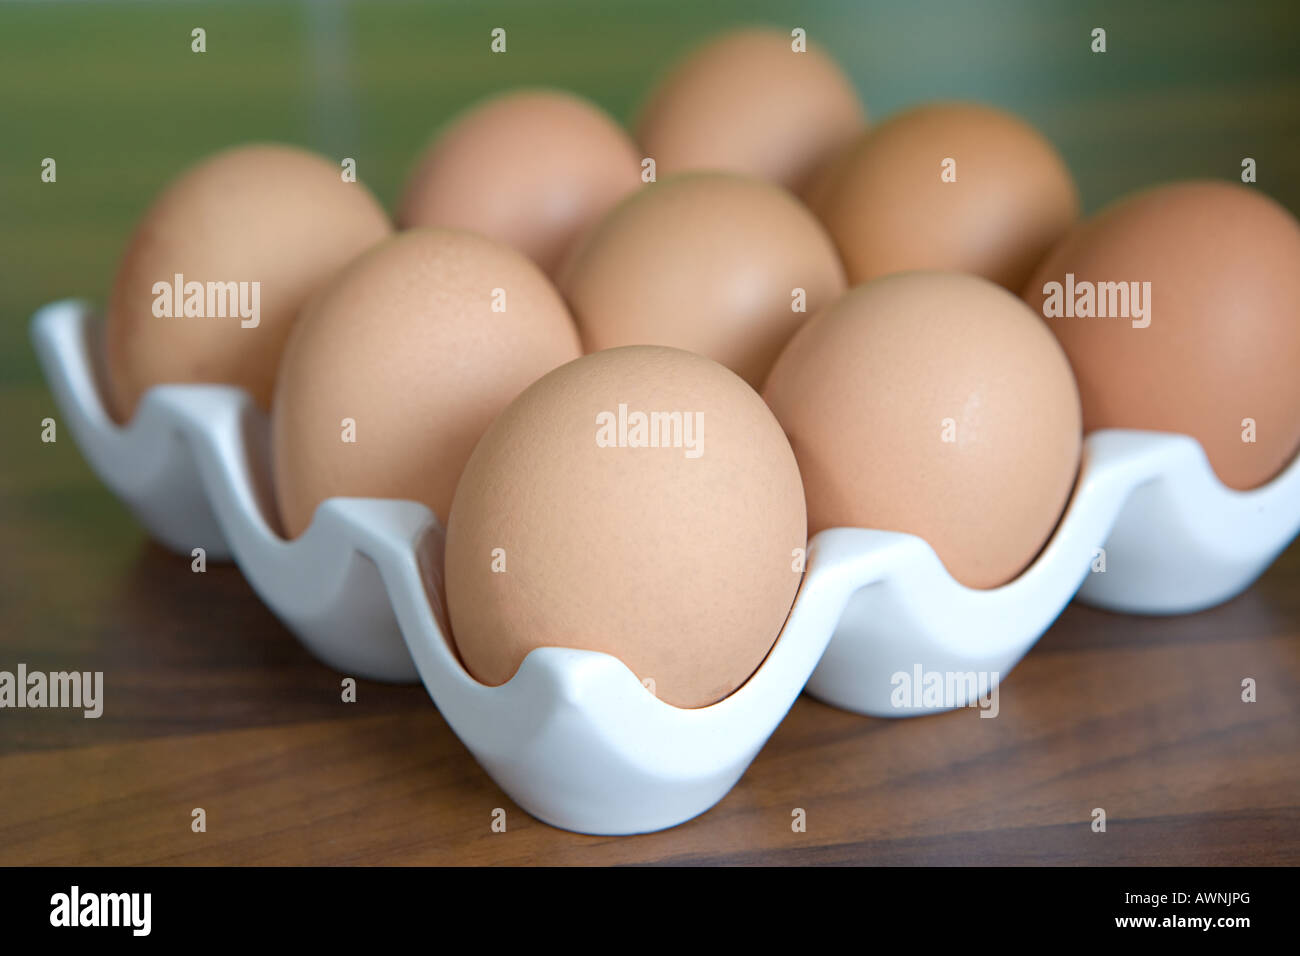 Реклама машинки для яиц. Упаковка под гусиное яйцо. Яичница из гусиных яиц. Чистые яйца. Блюда из гусиных яиц.